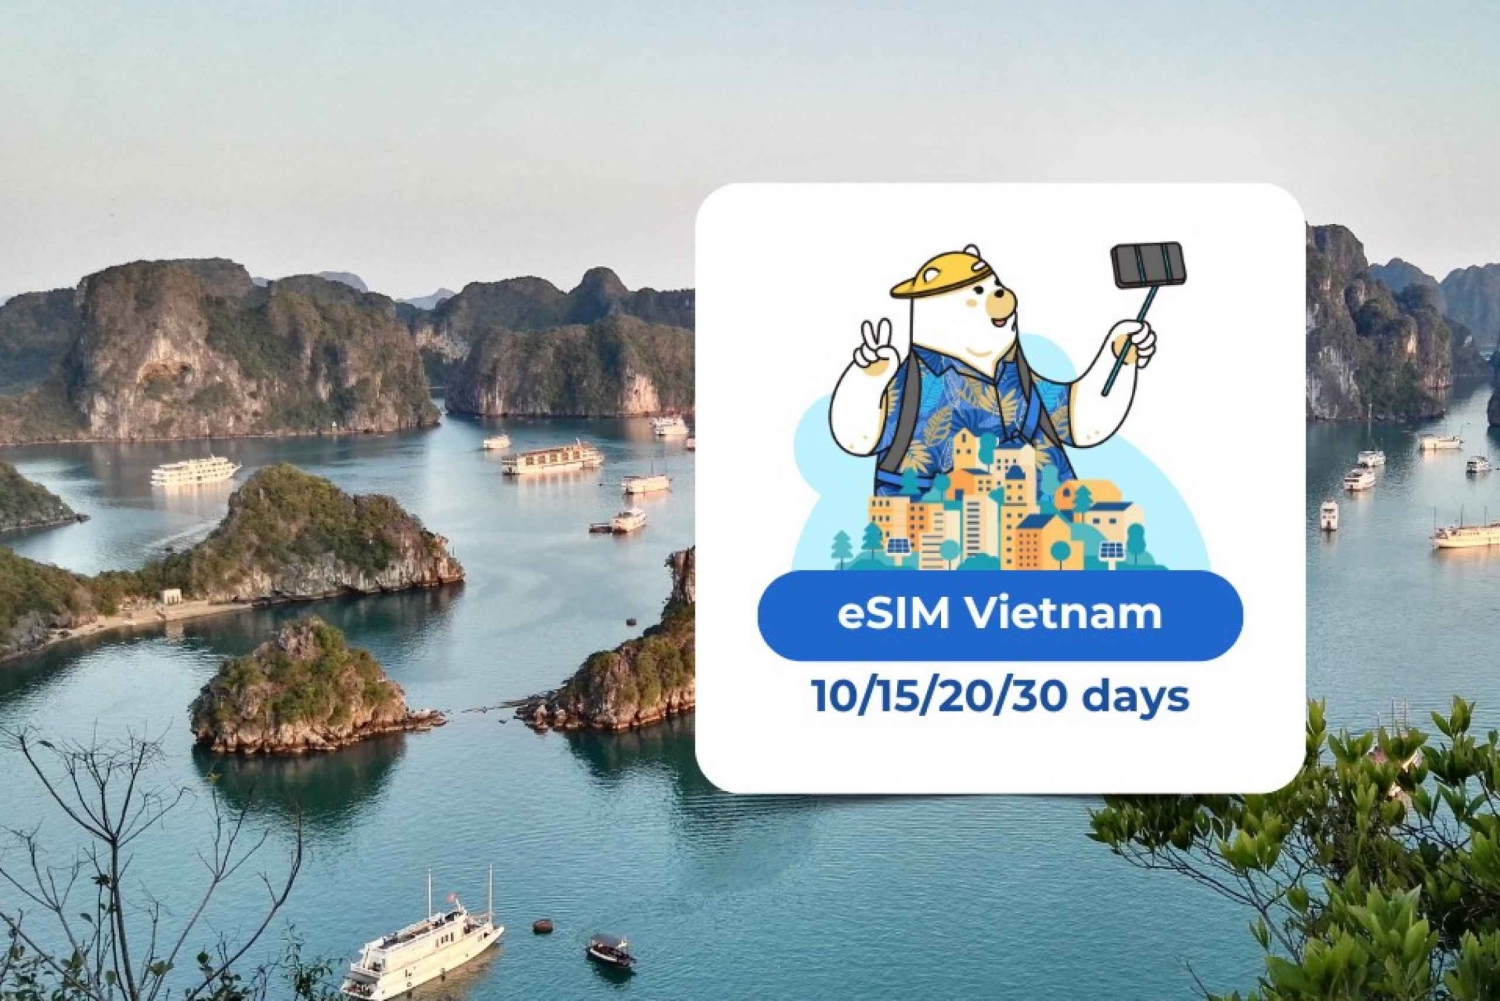 Vietnam eSIM : Plan de données mobiles en itinérance 10/15/20/30 jours